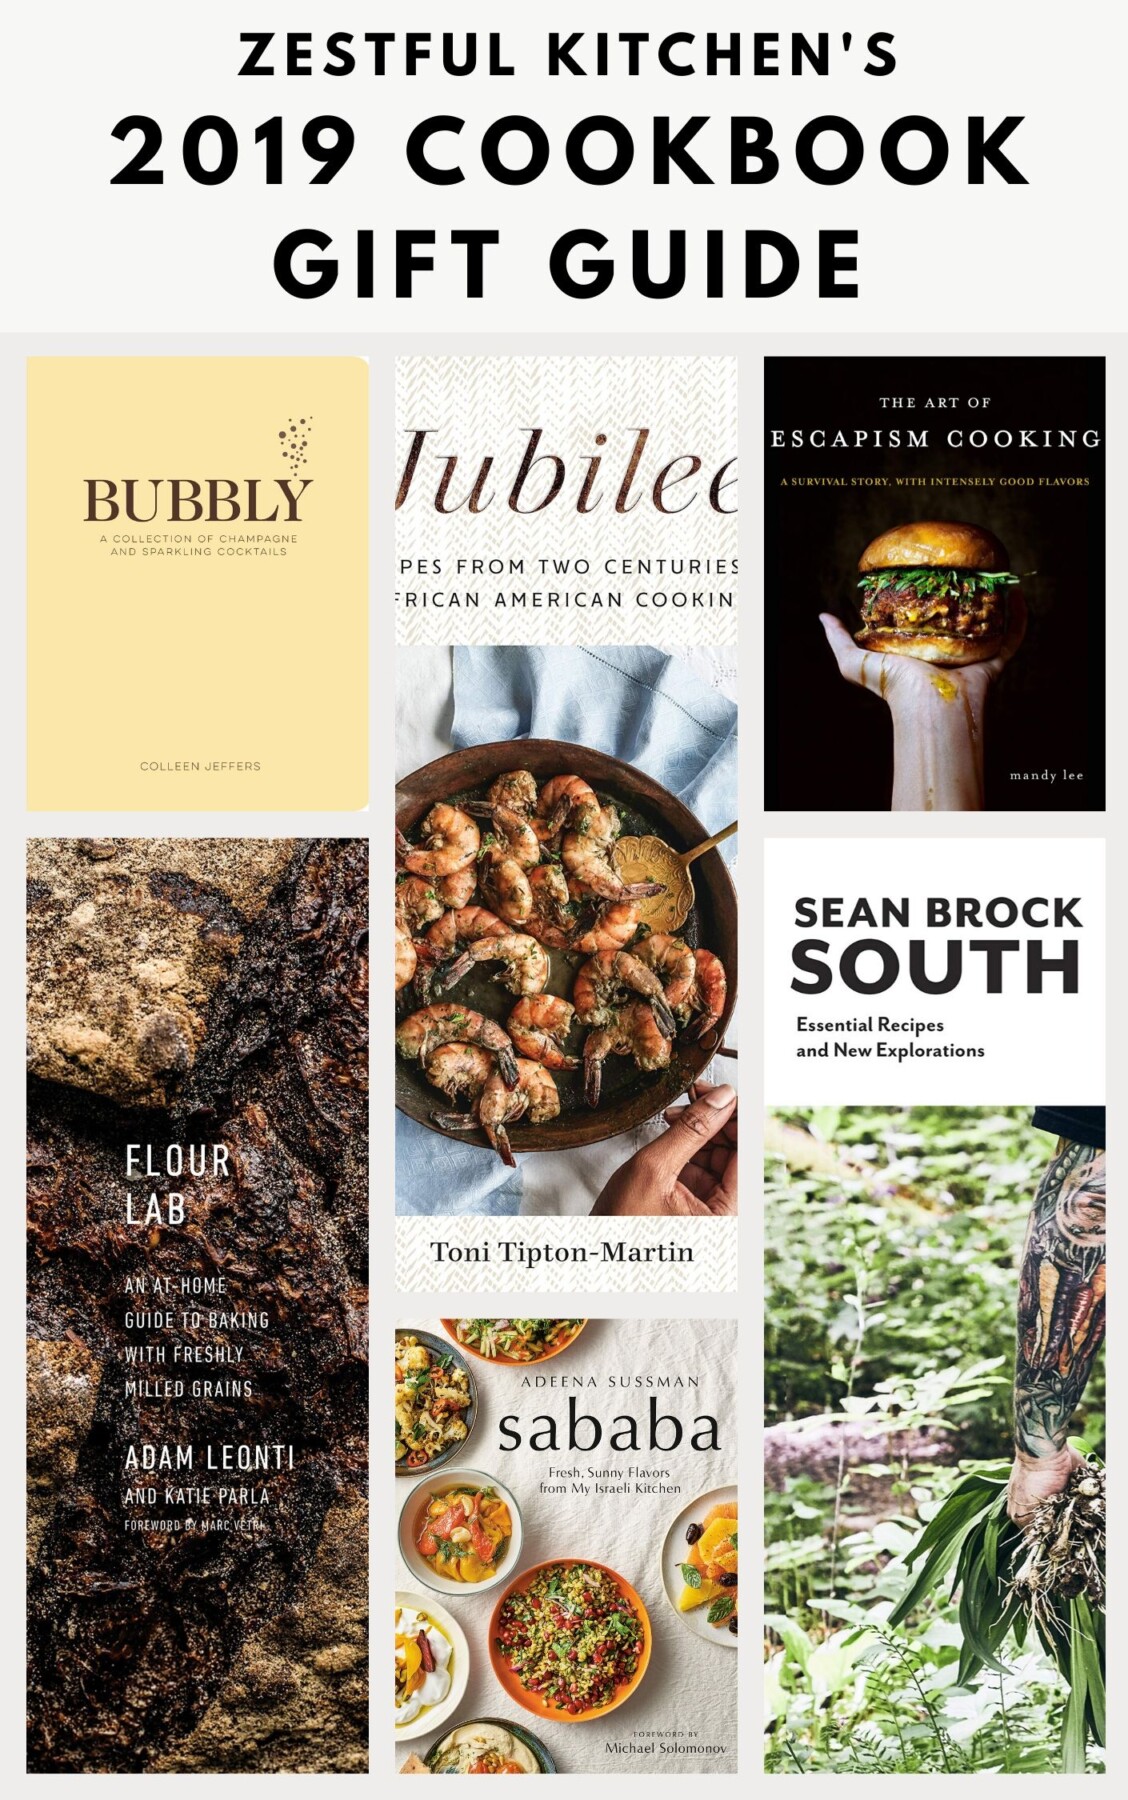 15 Best New Cookbooks of 2019 — Zestful Kitchen